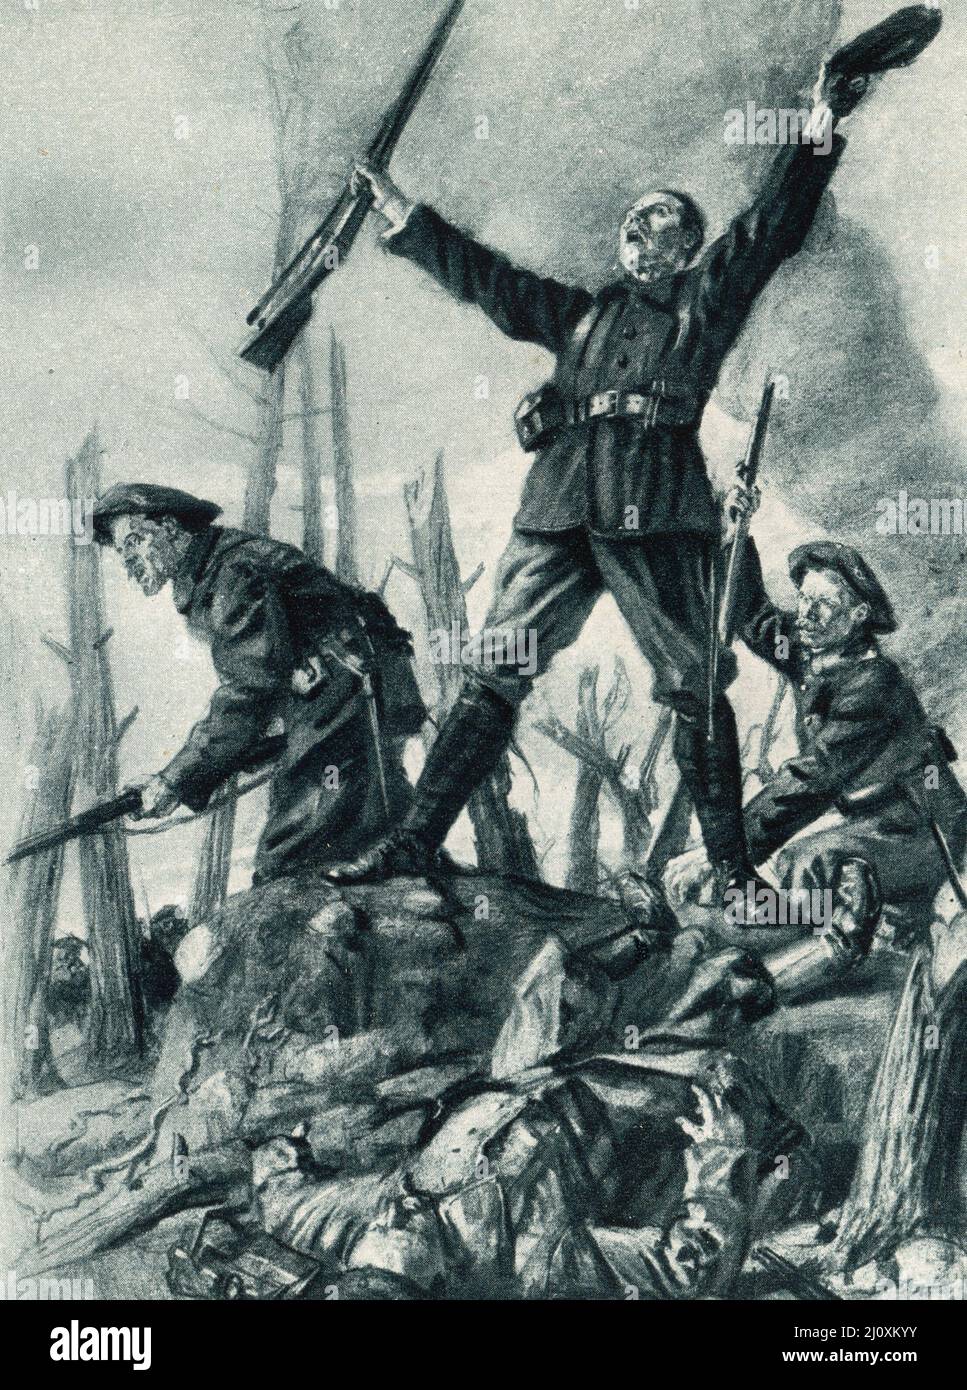 Les forces françaises photographiés à Hartmannsweiler Kopf, Alsace, France pendant les batailles peu concluantes combattaient avec les Allemands en 1915, photo en noir et blanc Banque D'Images